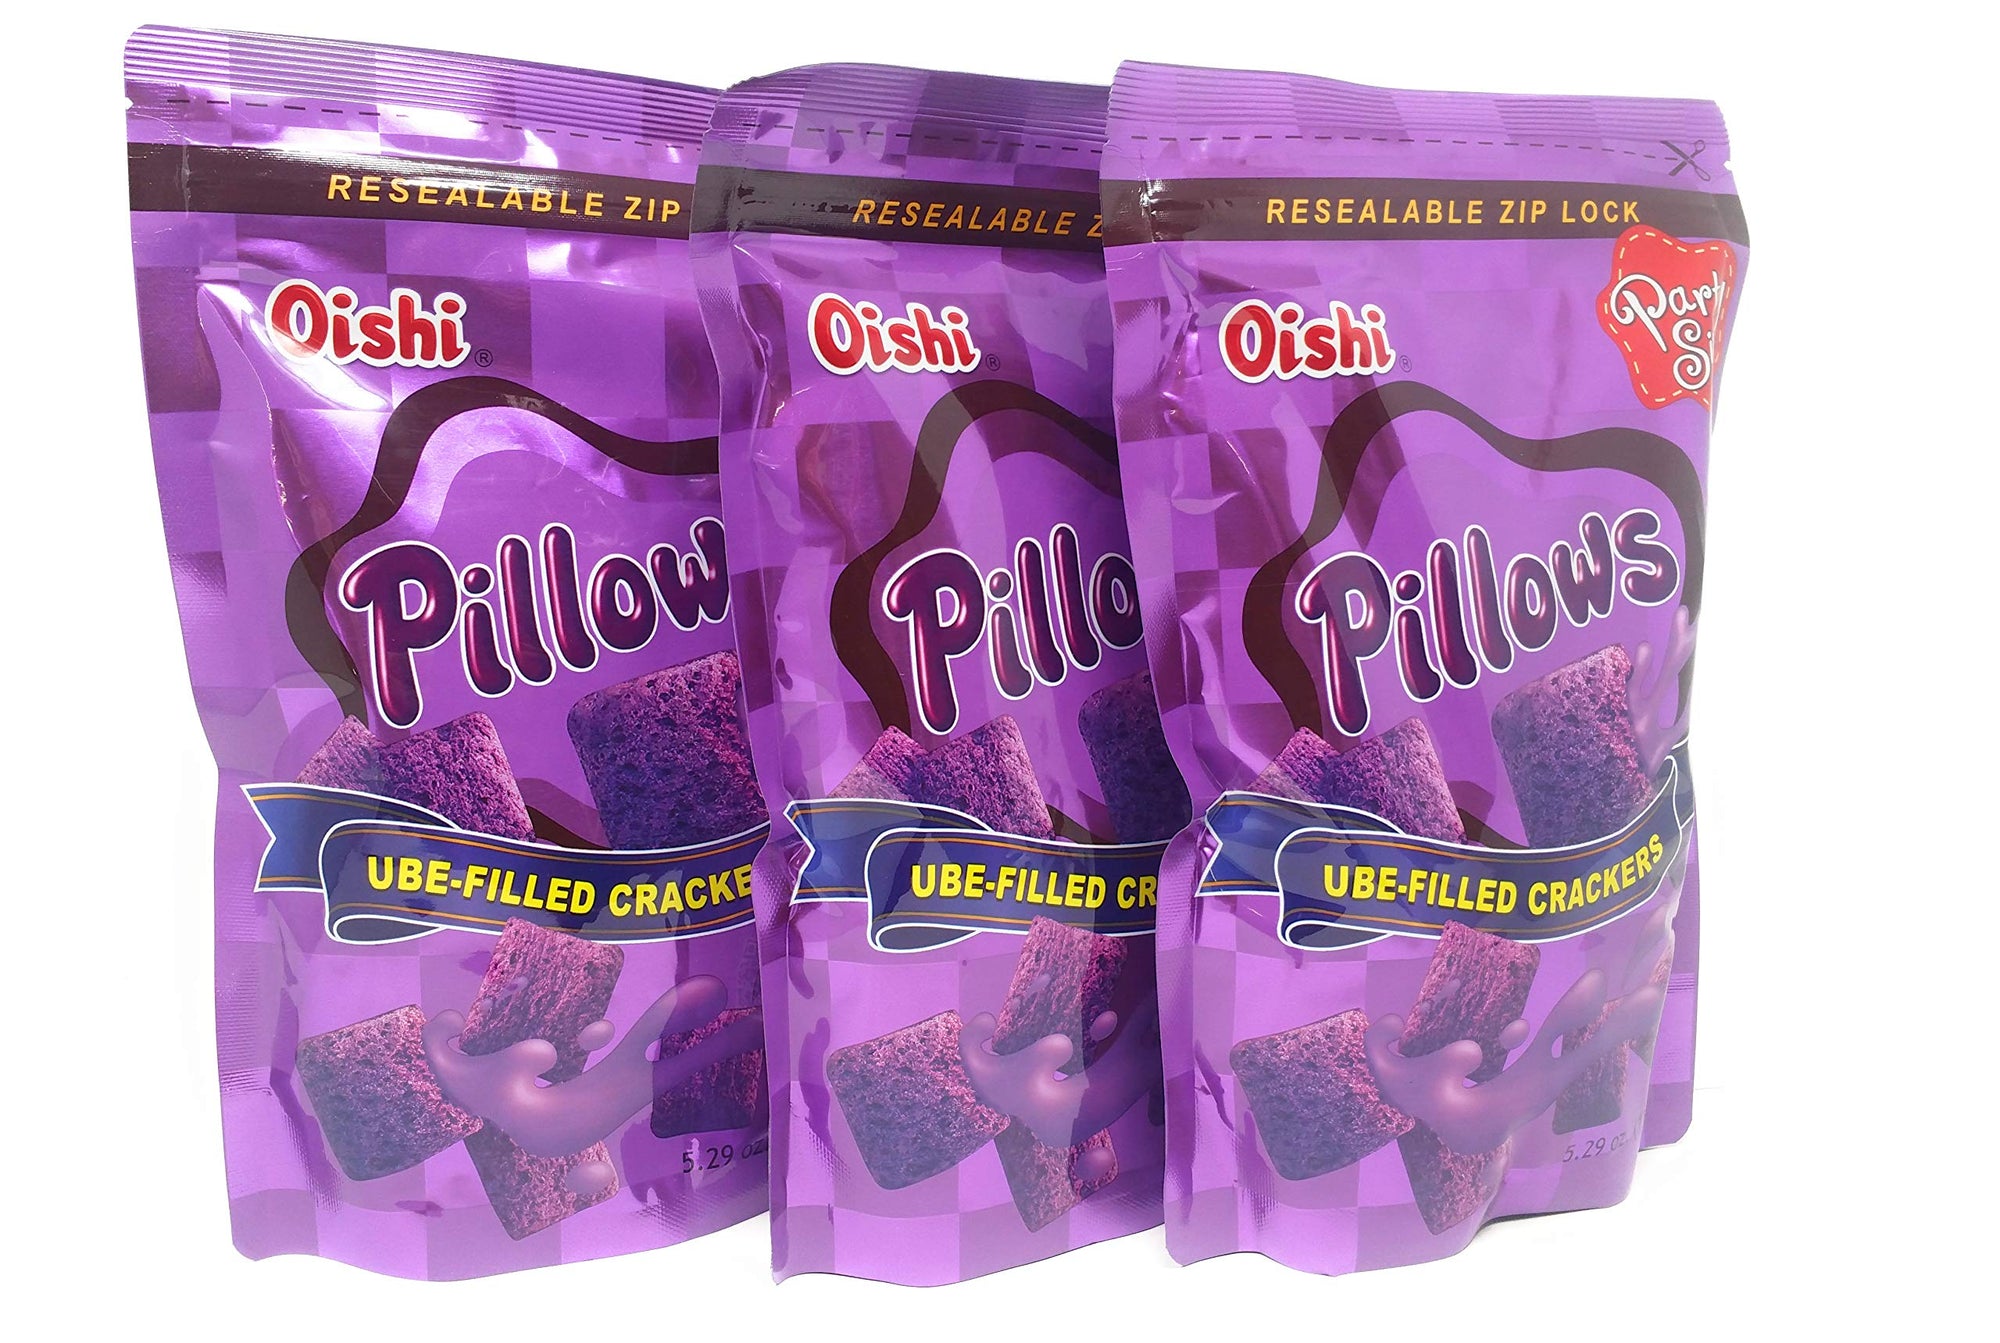 Oishi Pillows Crackers,1.34 Ounce